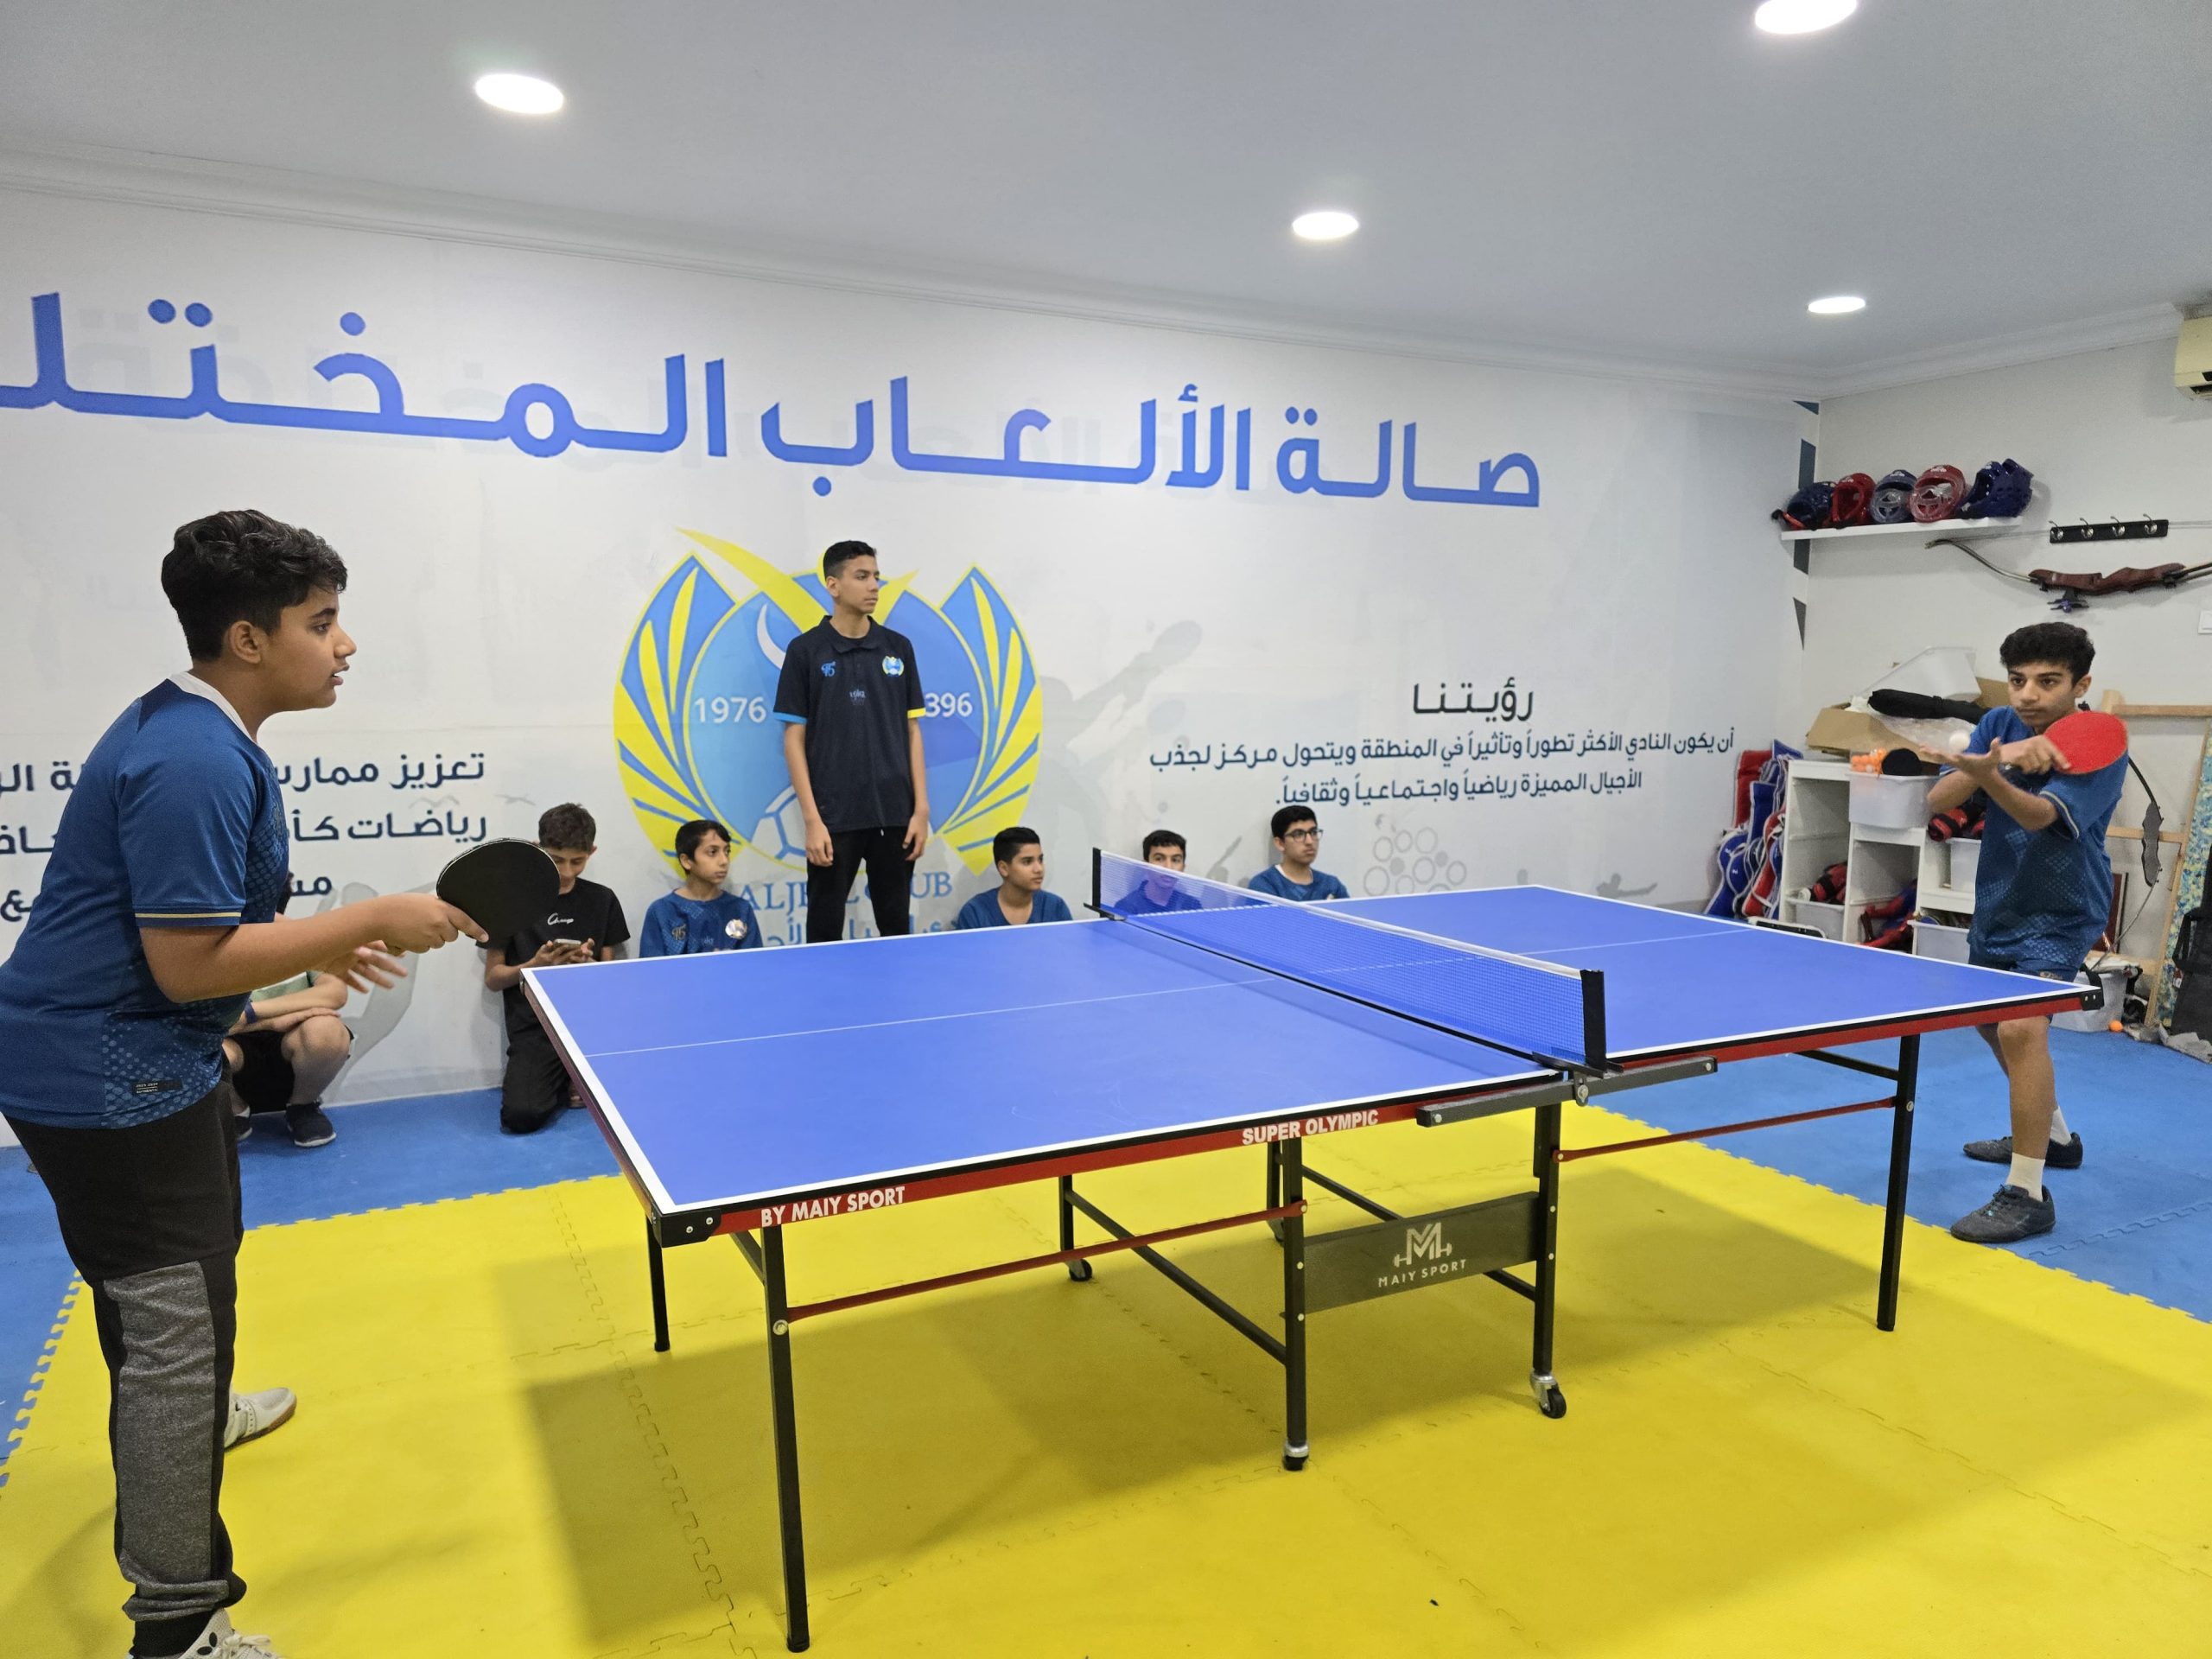 بطولة نادي الجيل لكرة الطاولة الرمضانية الداخلية تنجح في تعزيز التنافس والحدة بين اللاعبين